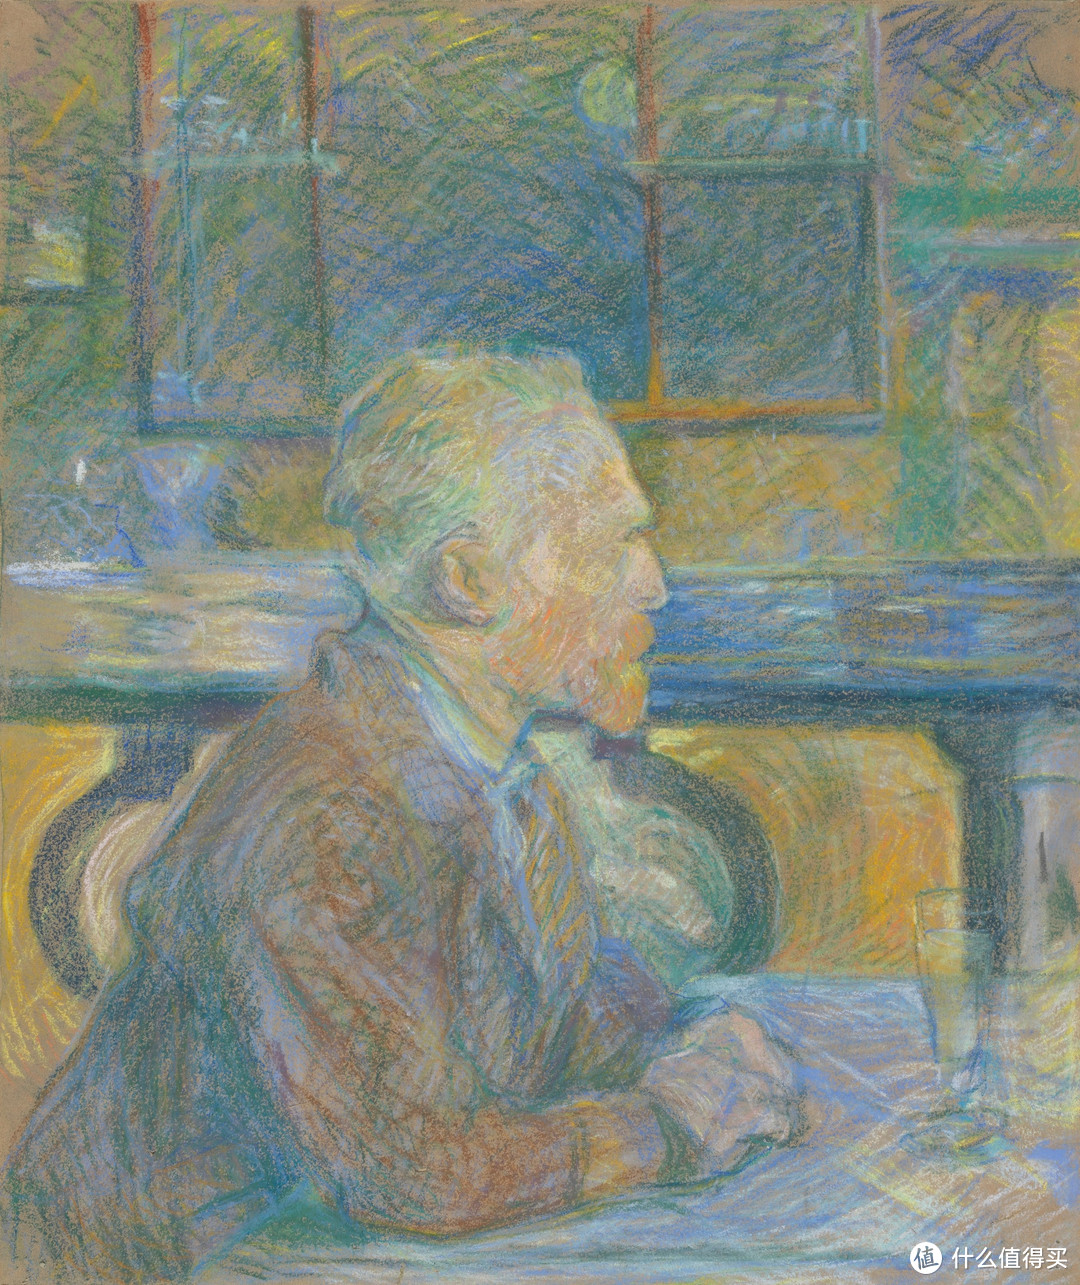 Vincent van Gogh by Henri de Toulouse-Lautrec